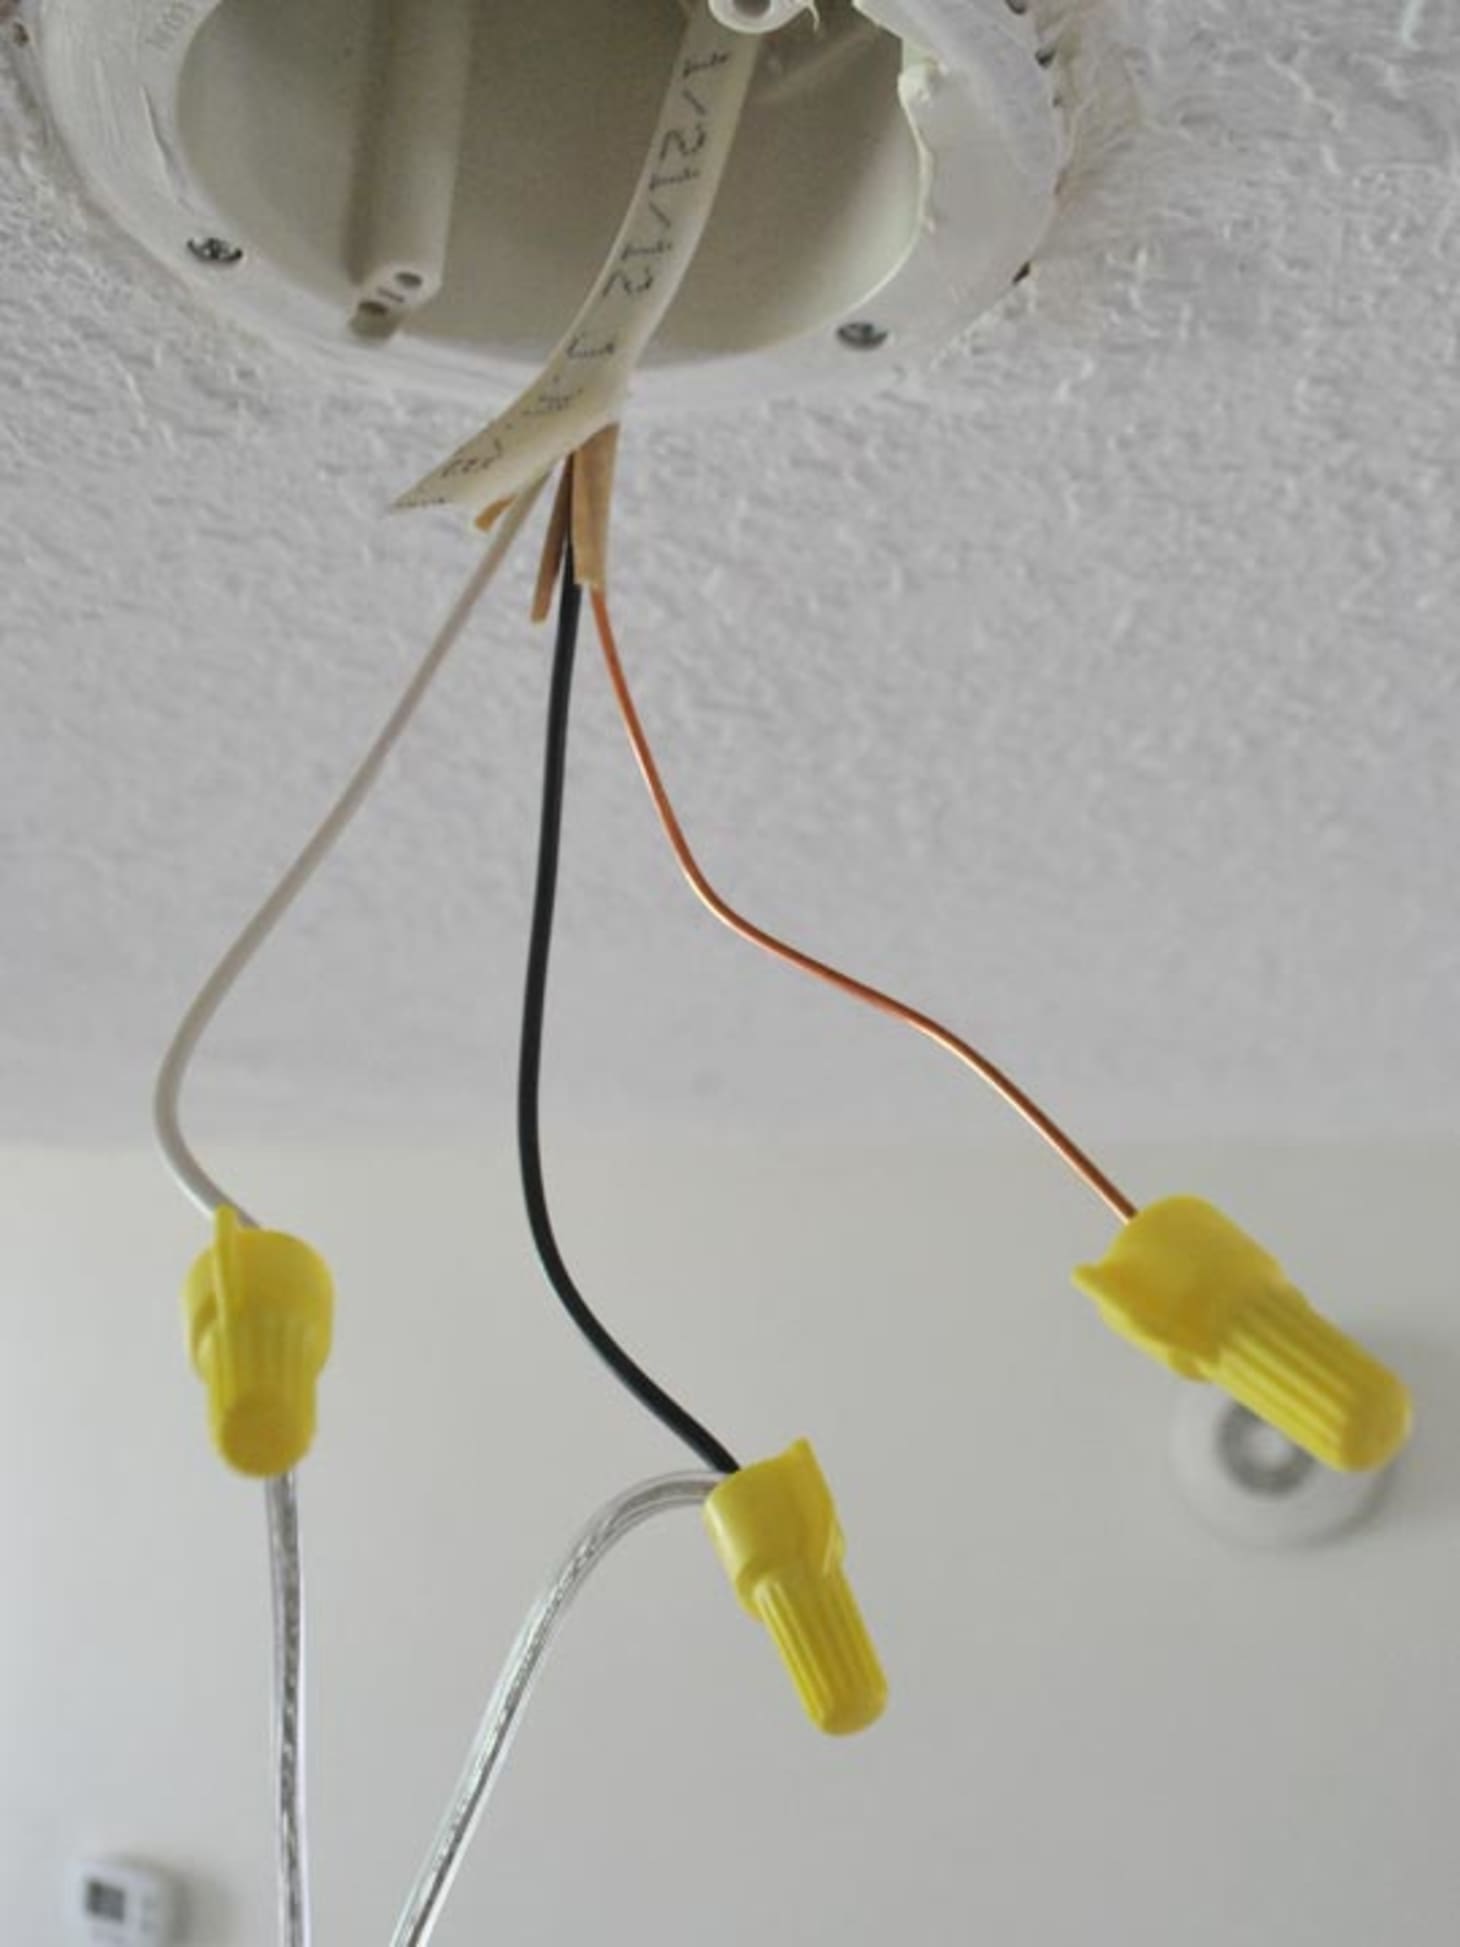 Basic Wiring Light Fixture - 5